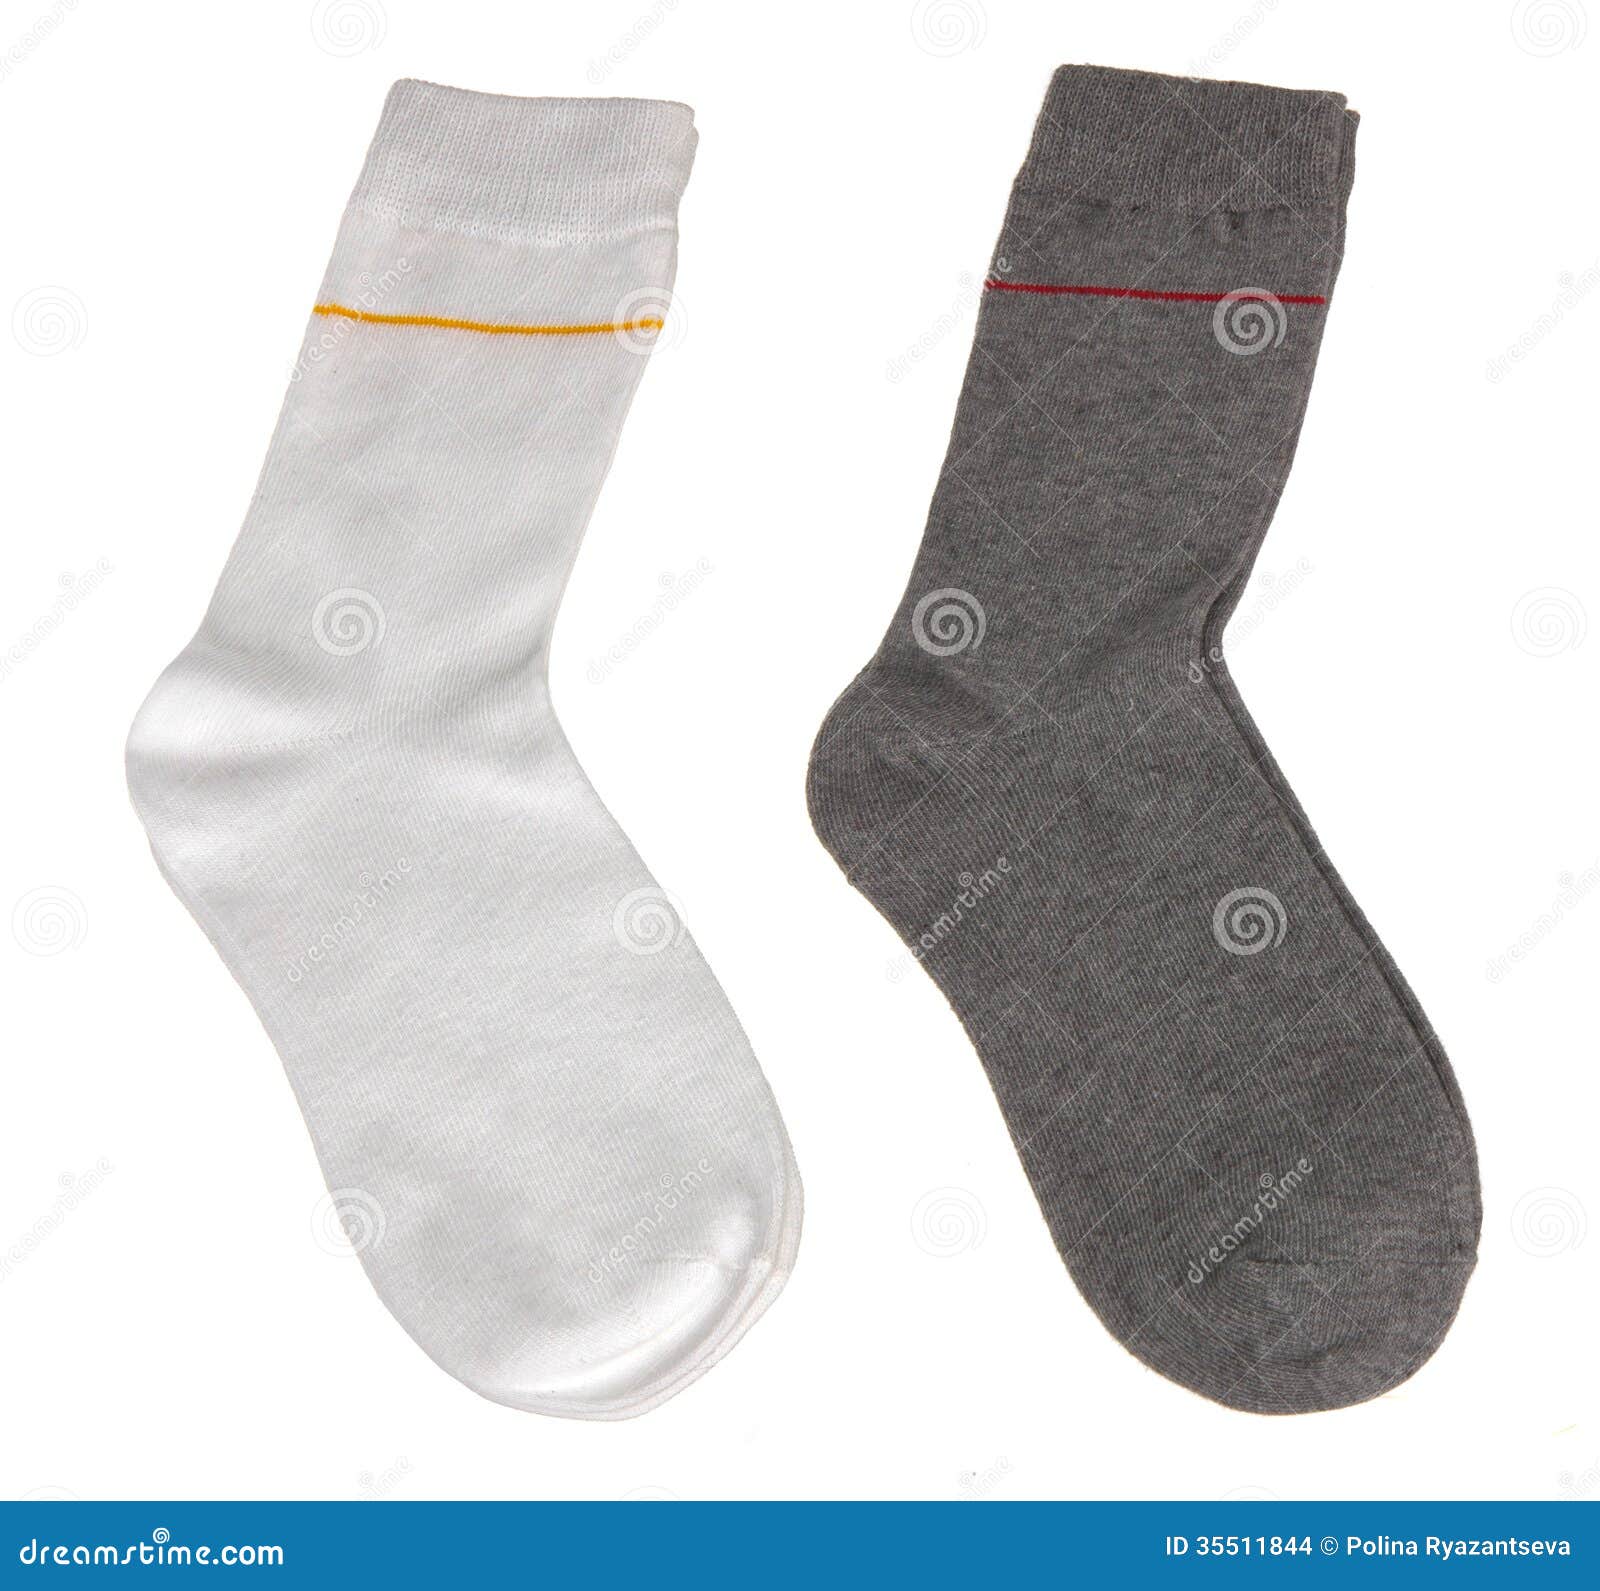 White and grey socks stock photo. Image of stocking, hosiery - 35511844